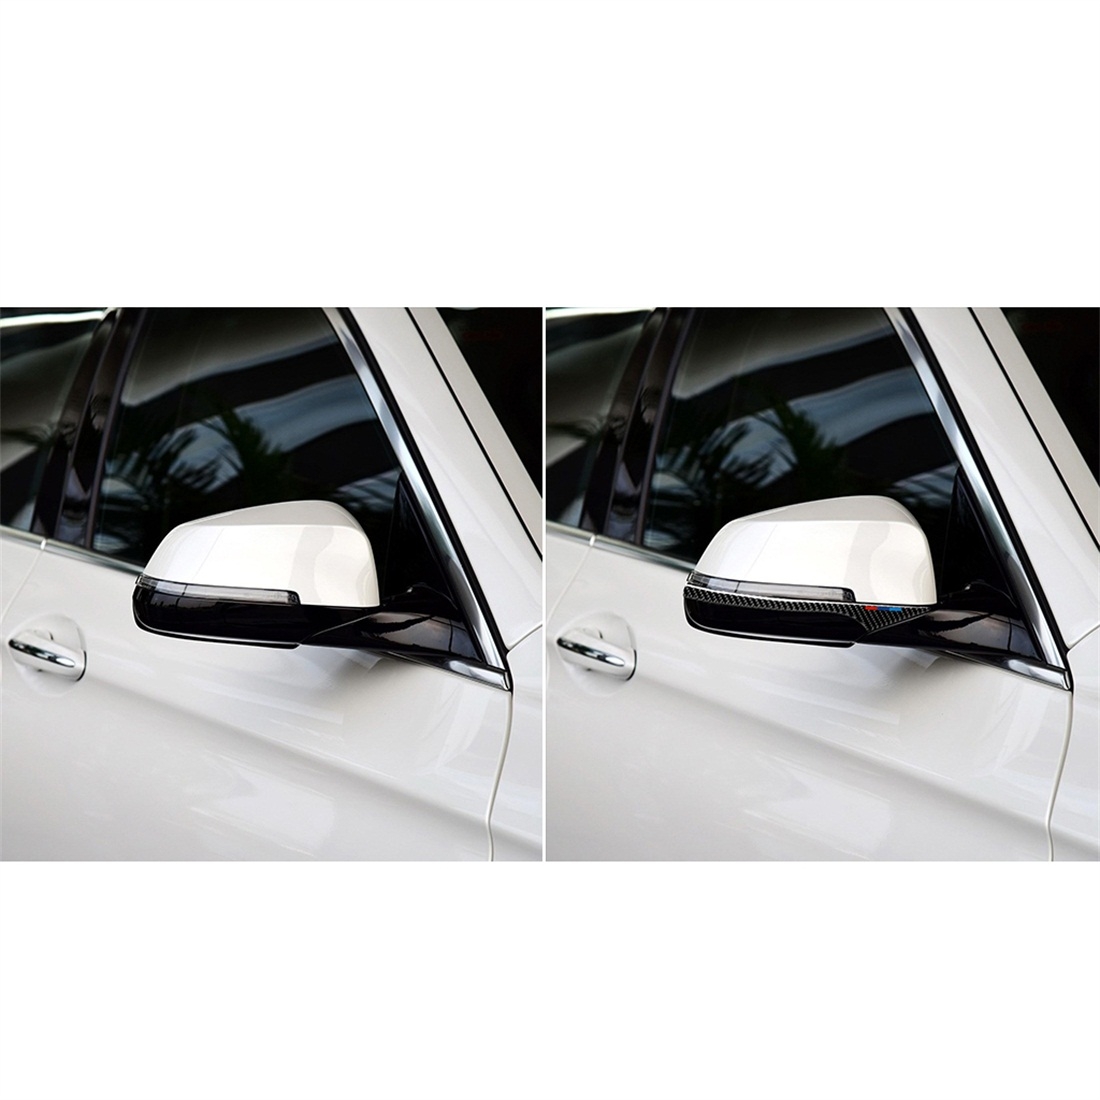 Three Color A Carbon Fiber Car Rearview Mirror Bumper Strip Decorative Sticker for BMW 5 Series E60 2008-2010 / F10 2011-2017 / F07 2010-2015 / F01 2010-2015